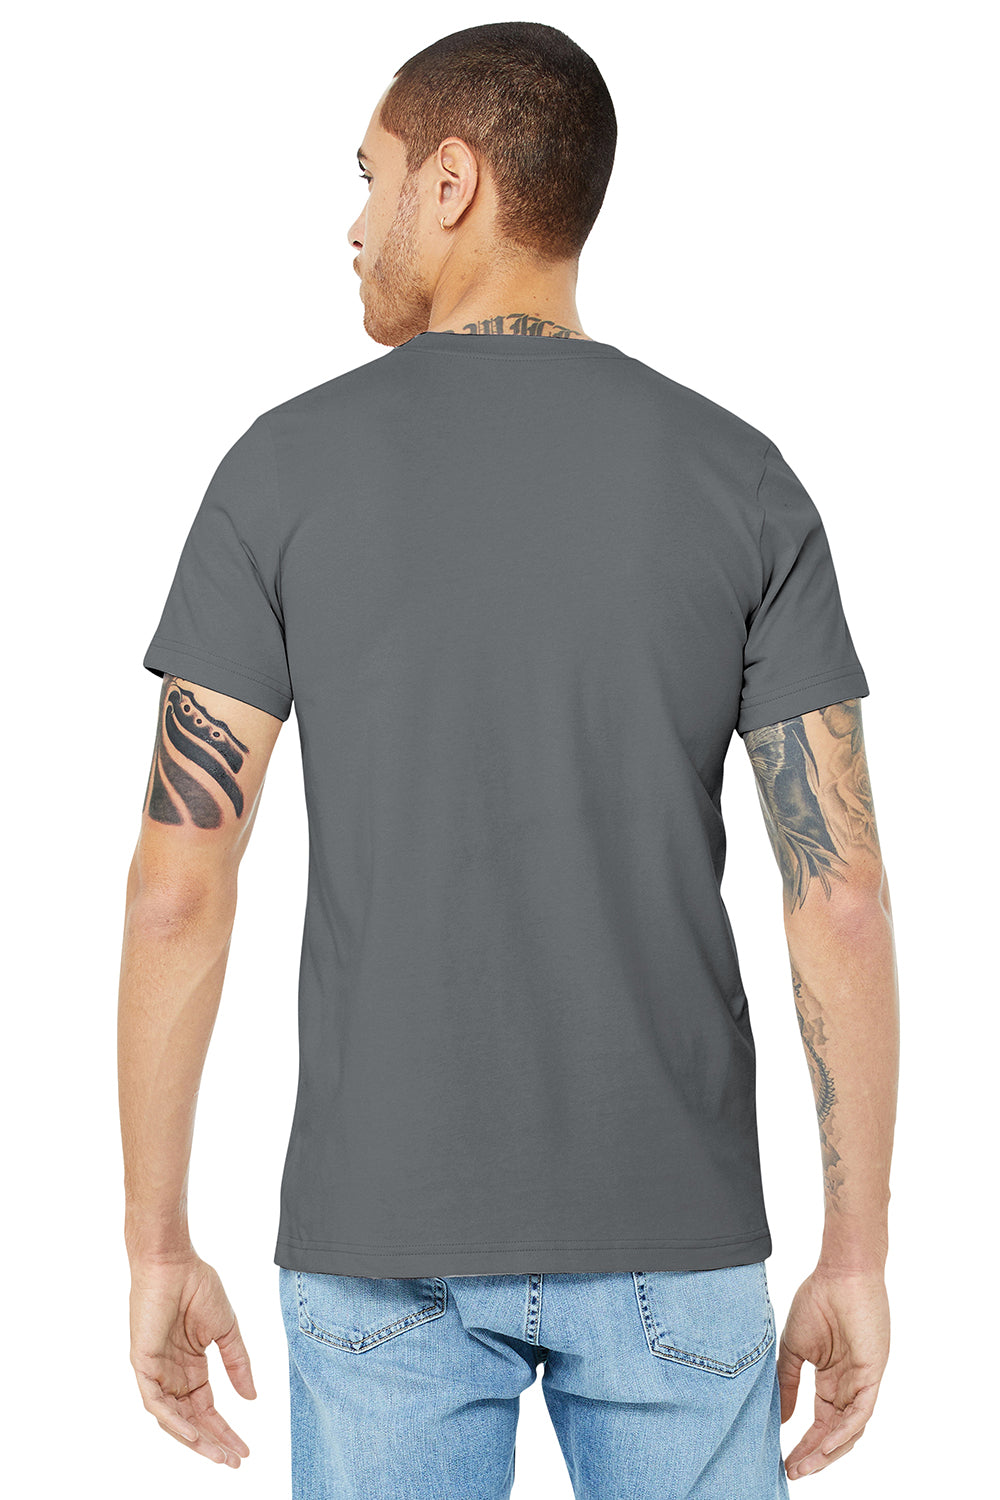 Bella + Canvas BC3001/3001C Mens Jersey Short Sleeve Crewneck T-Shirt Storm Grey Model Back